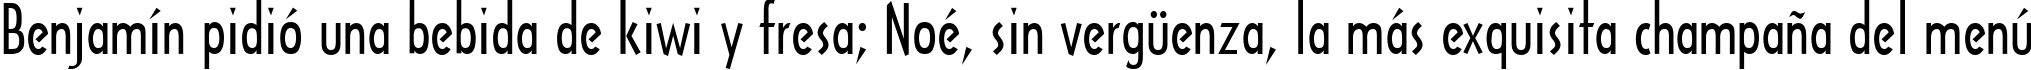 Пример написания шрифтом Architecture текста на испанском